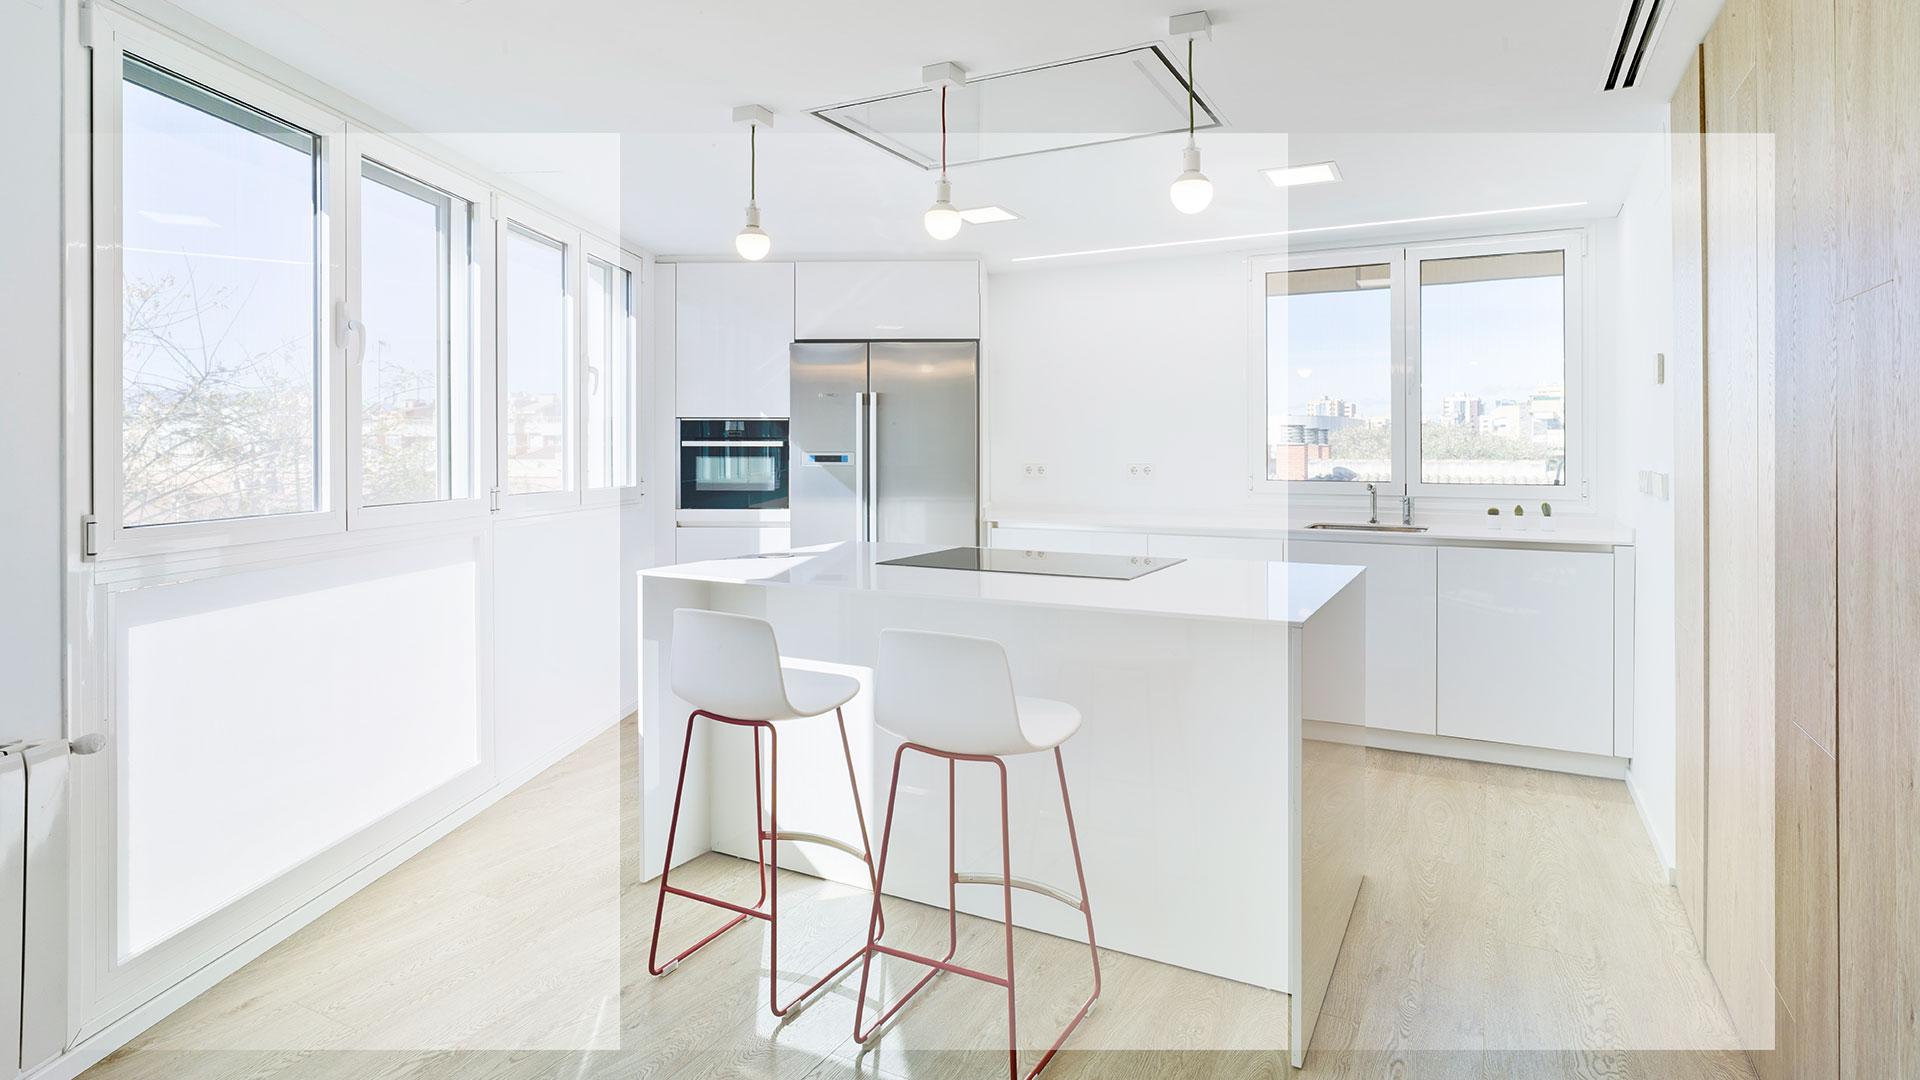 Imagen interior de proyecto de Cealco: cocina de estilo moderno en colores claros y amplias ventanas. Composición artística.